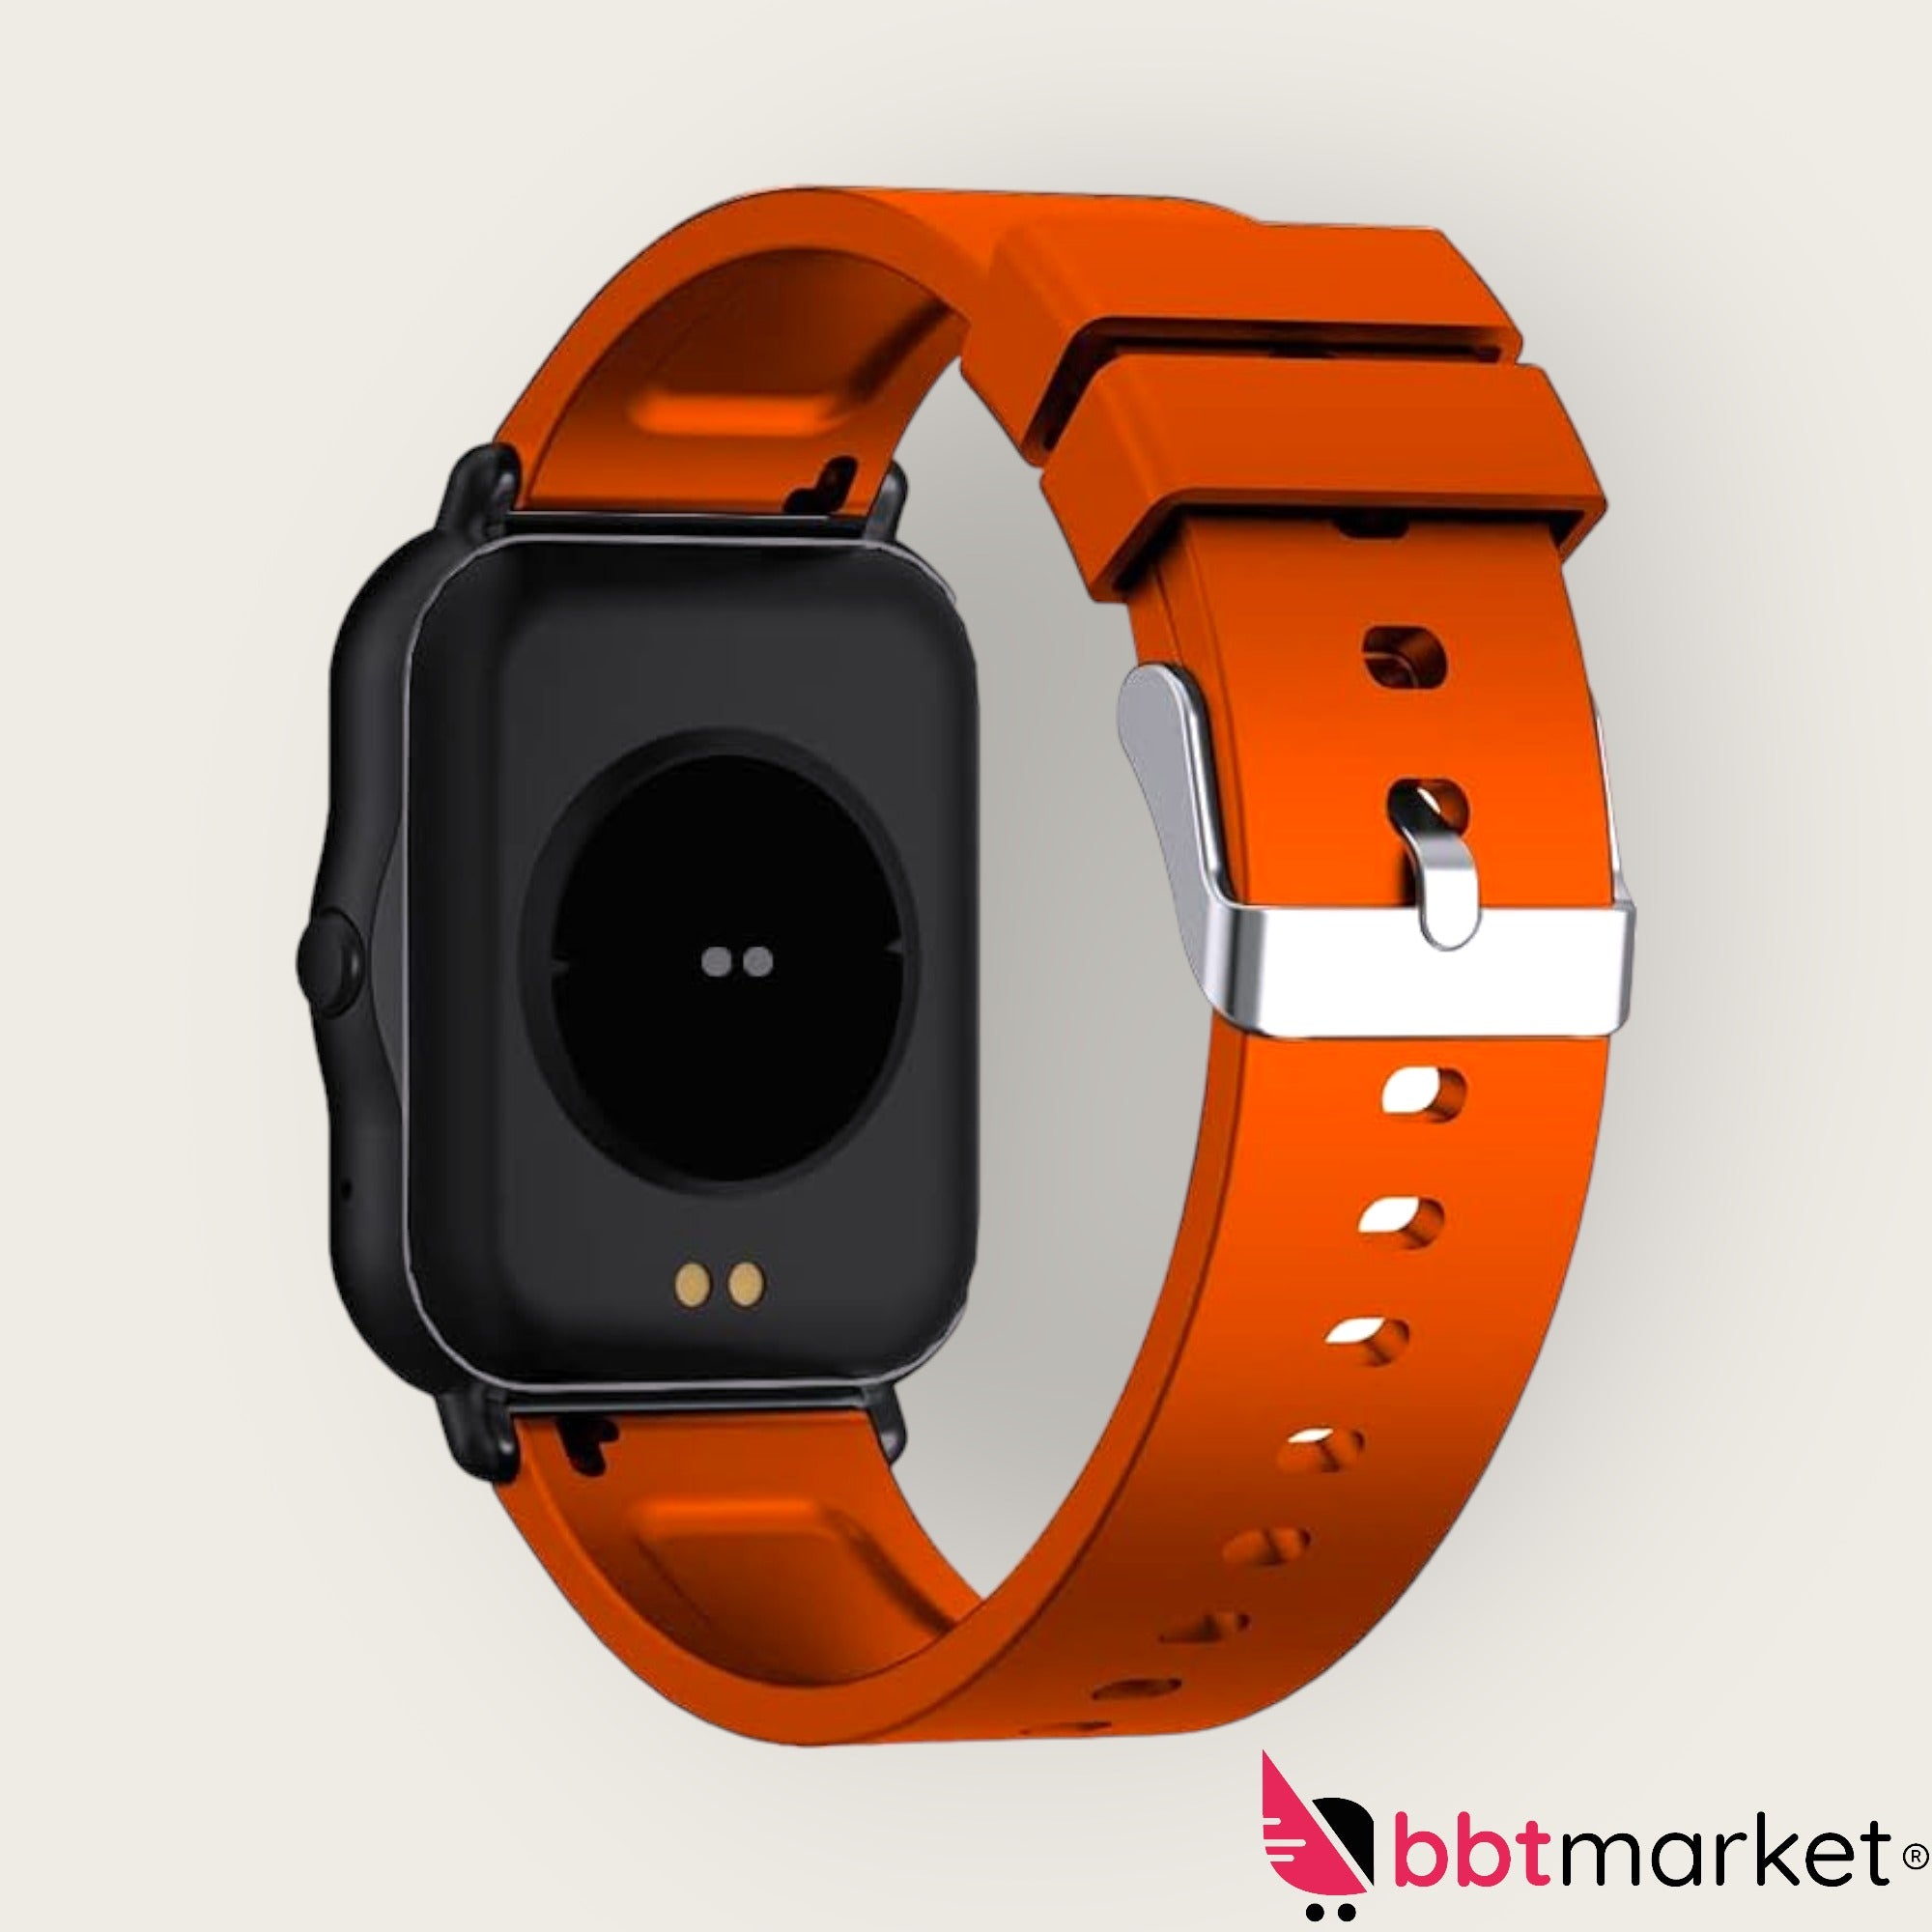 Smartwatch Armband Pulsuhr Blutdruck Fitness Tracker Für Herren Damen Bluetooth